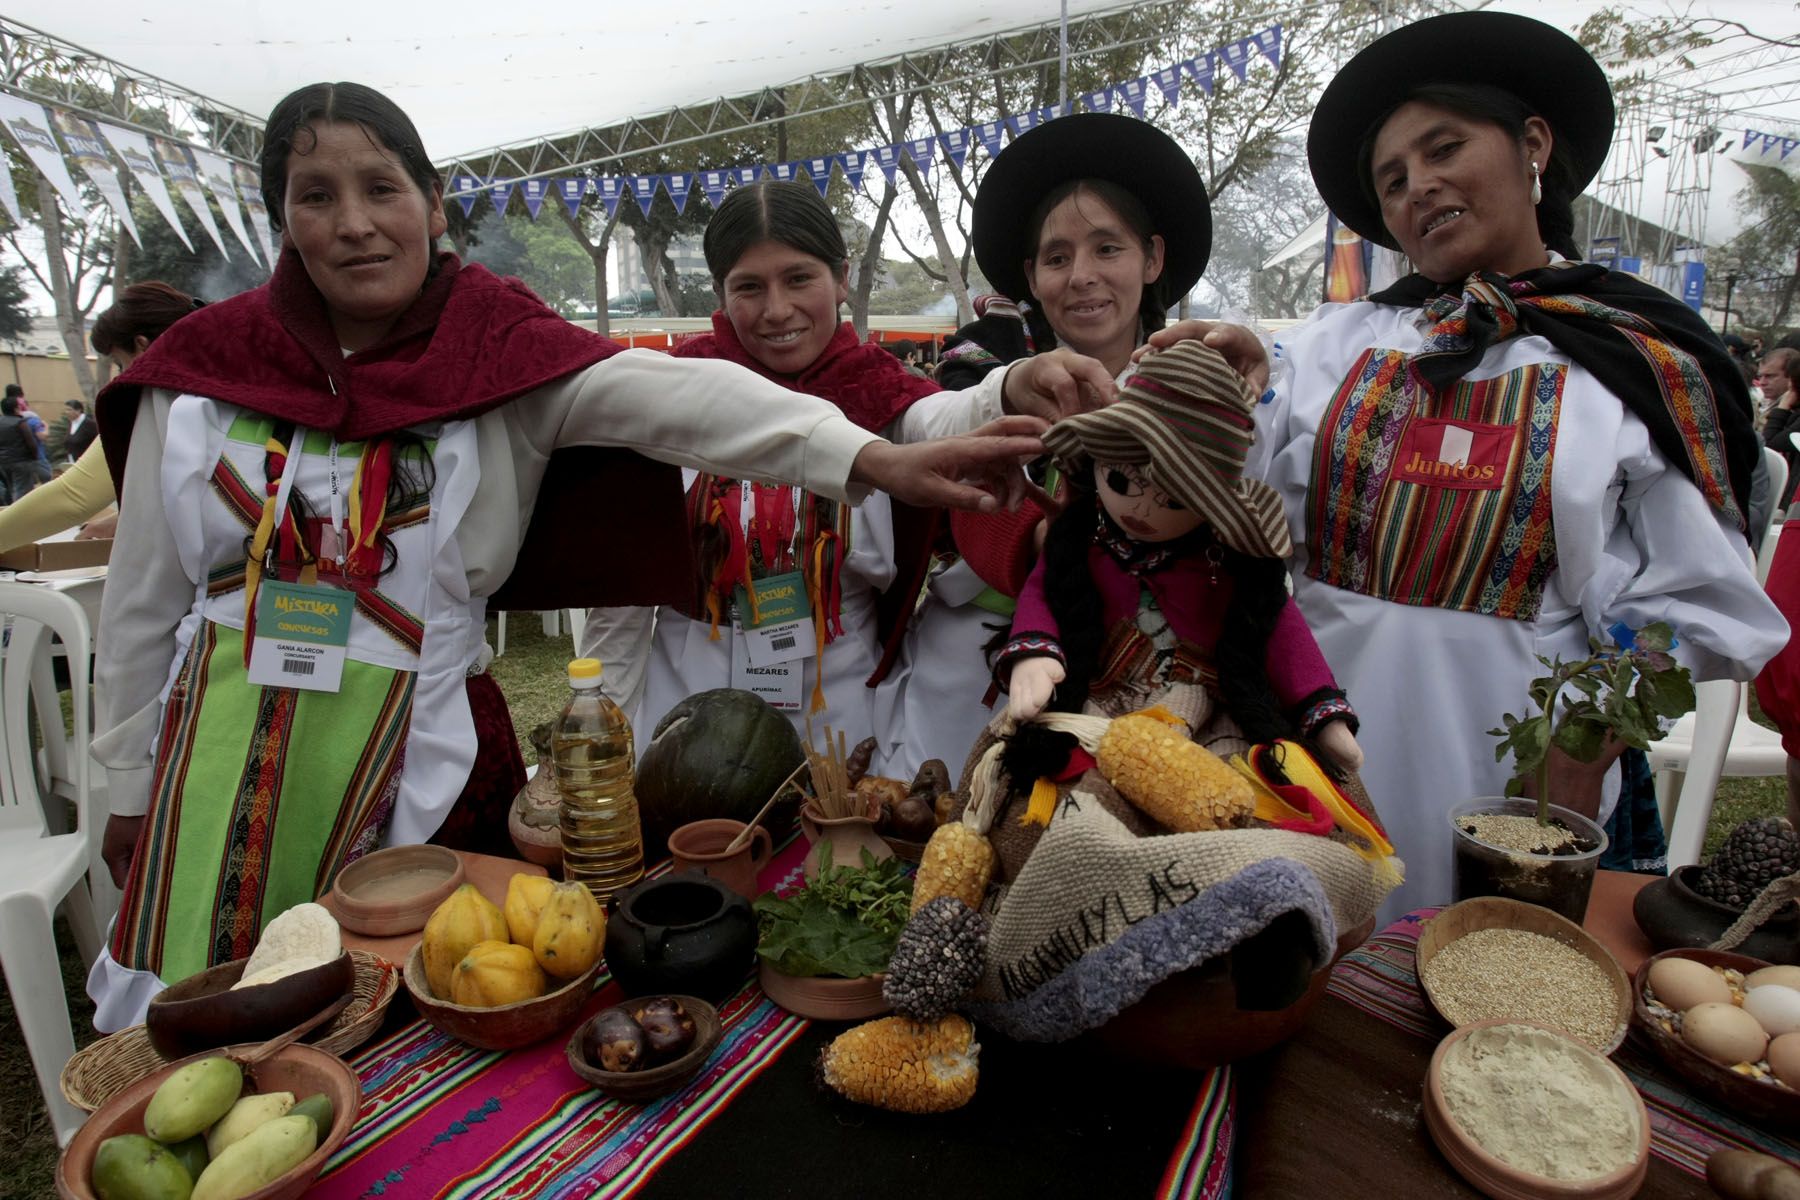 Cocineras oriundas de Huancavelica ganaron concurso de comidas sabrosas y nutritivas en feria Mistura.Foto:ANDINA / Juan Carlos Guzmán Negrini.